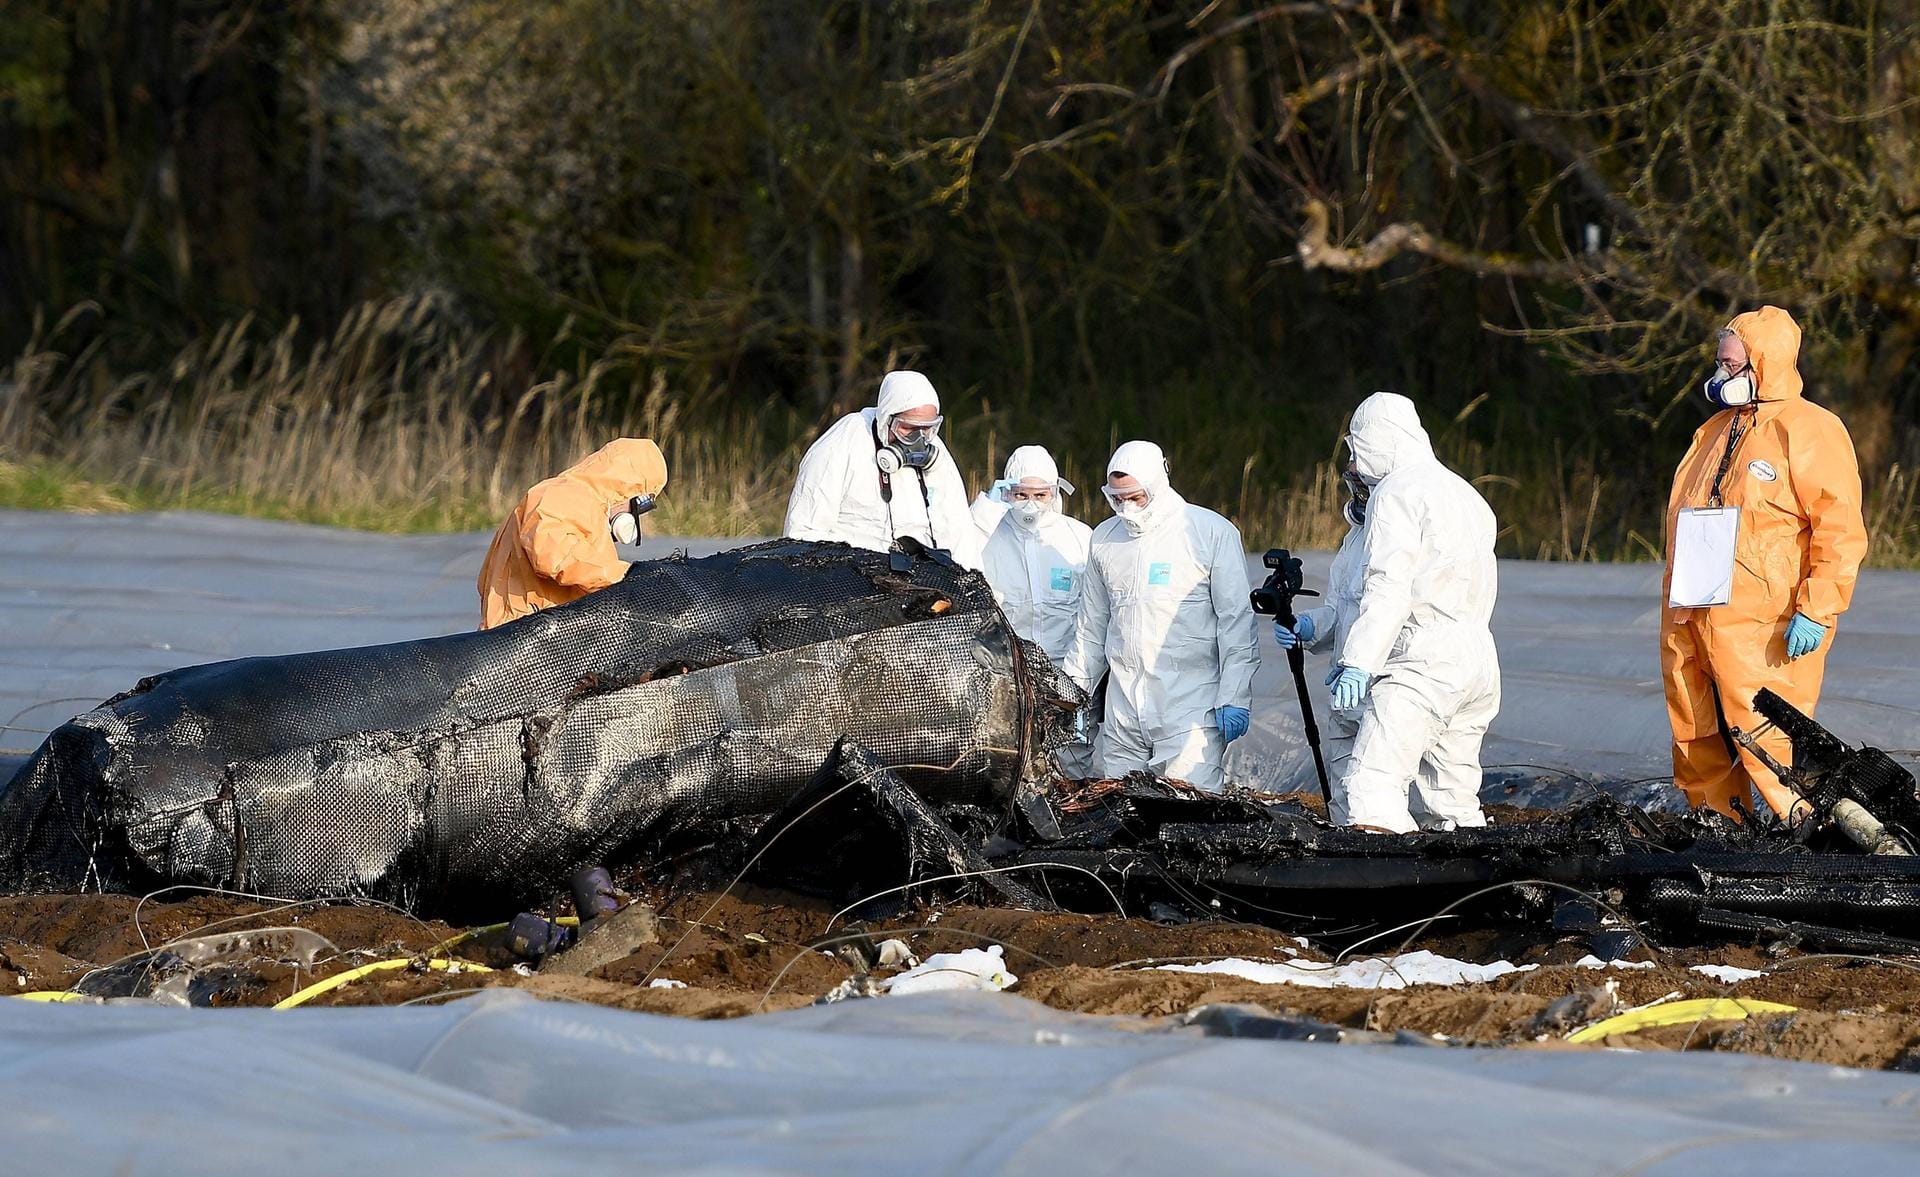 Deutschland, März 2019: Im südhessischen Erzhausen sterben drei Menschen beim Absturz eines Kleinflugzeugs – darunter eine der reichsten Frauen Russlands.